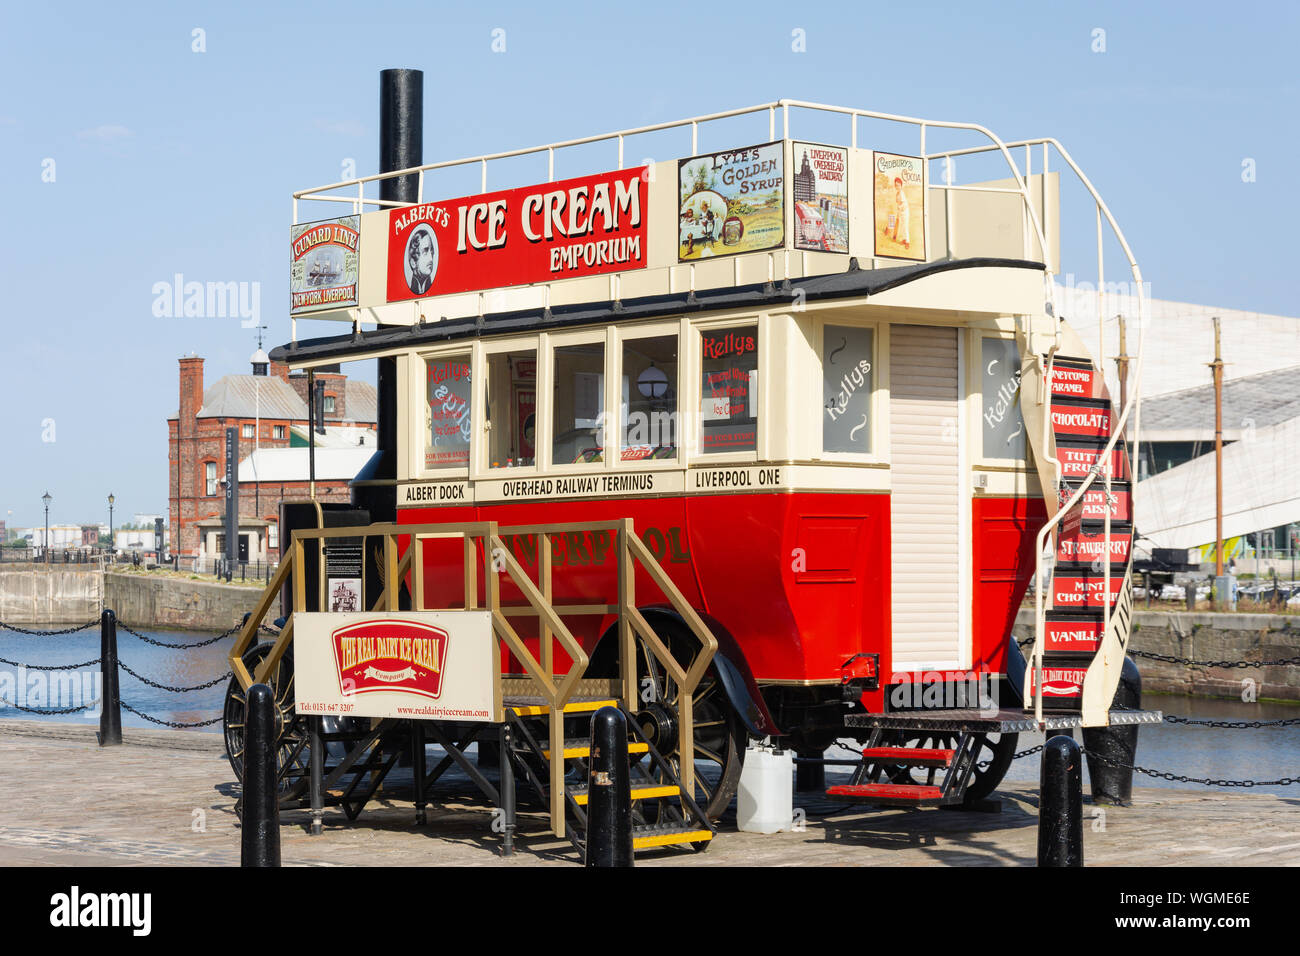 1970 Ford Econoline omnibus à vapeur (1902) Utilisée comme crème glace kiosque, Royal Albert Dock, Liverpool Waterfront, Liverpool, Merseyside, England, United Kingdom Banque D'Images